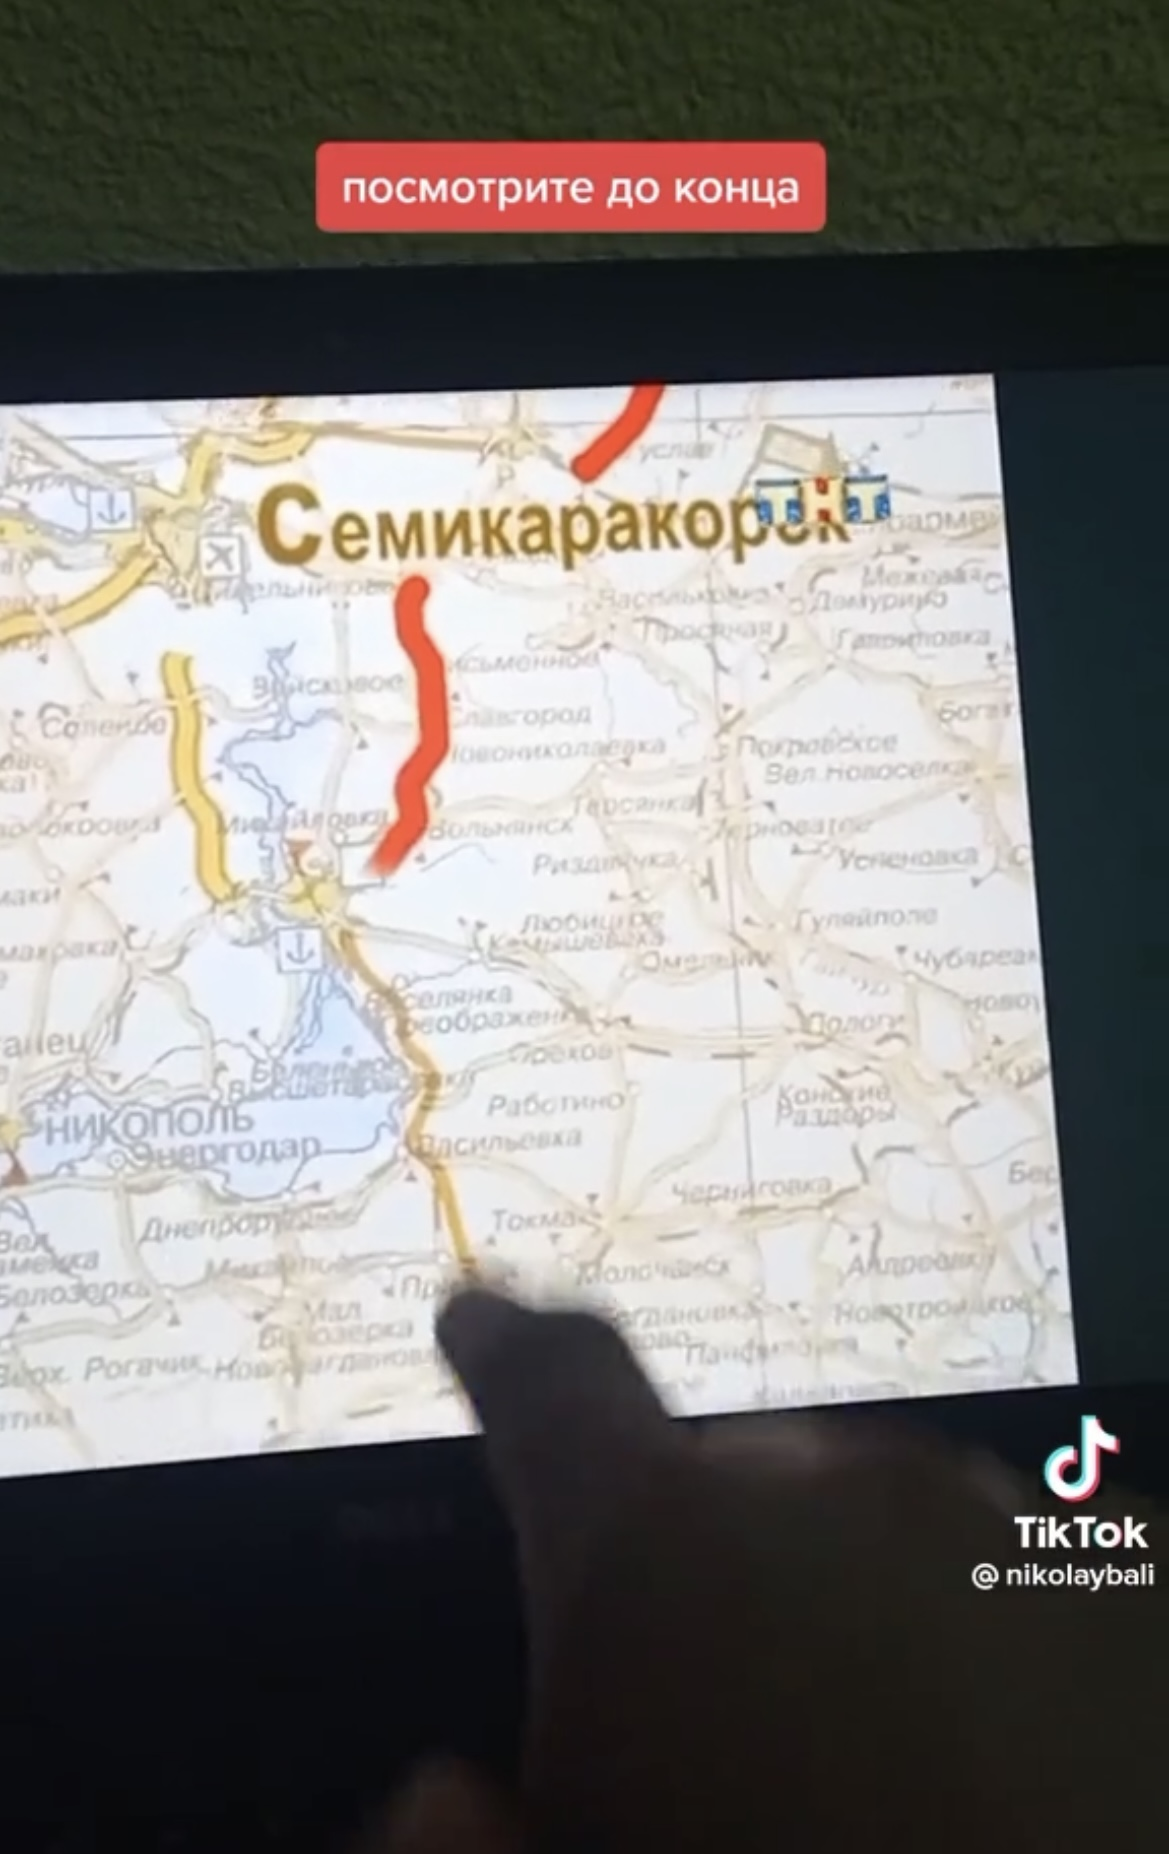 У серіалі "Щасливі разом" ще в 2006-му Росія "привласнила" собі українські території: Ізюм, Бердянськ та інші міста показали на мапі РФ. Відео